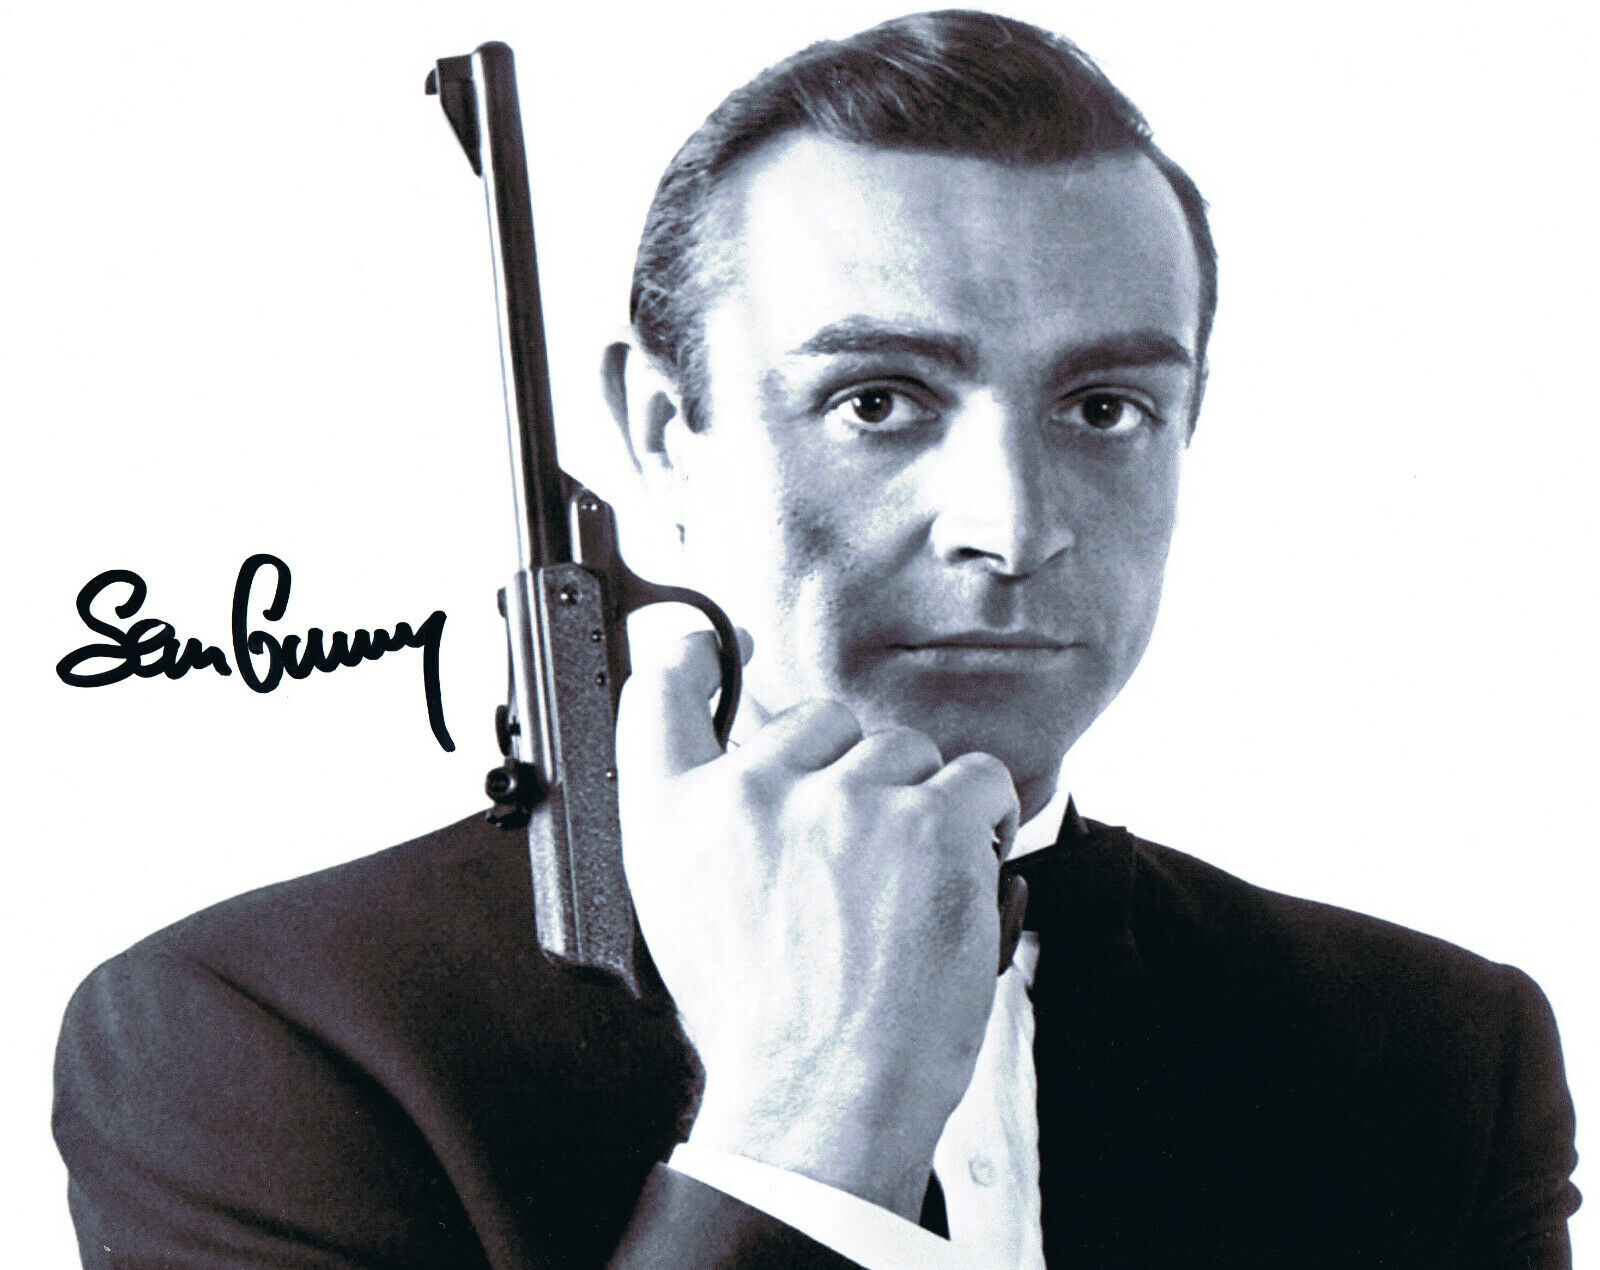 Sean Connery - James Bond - Autograph The Untouchables Meteor